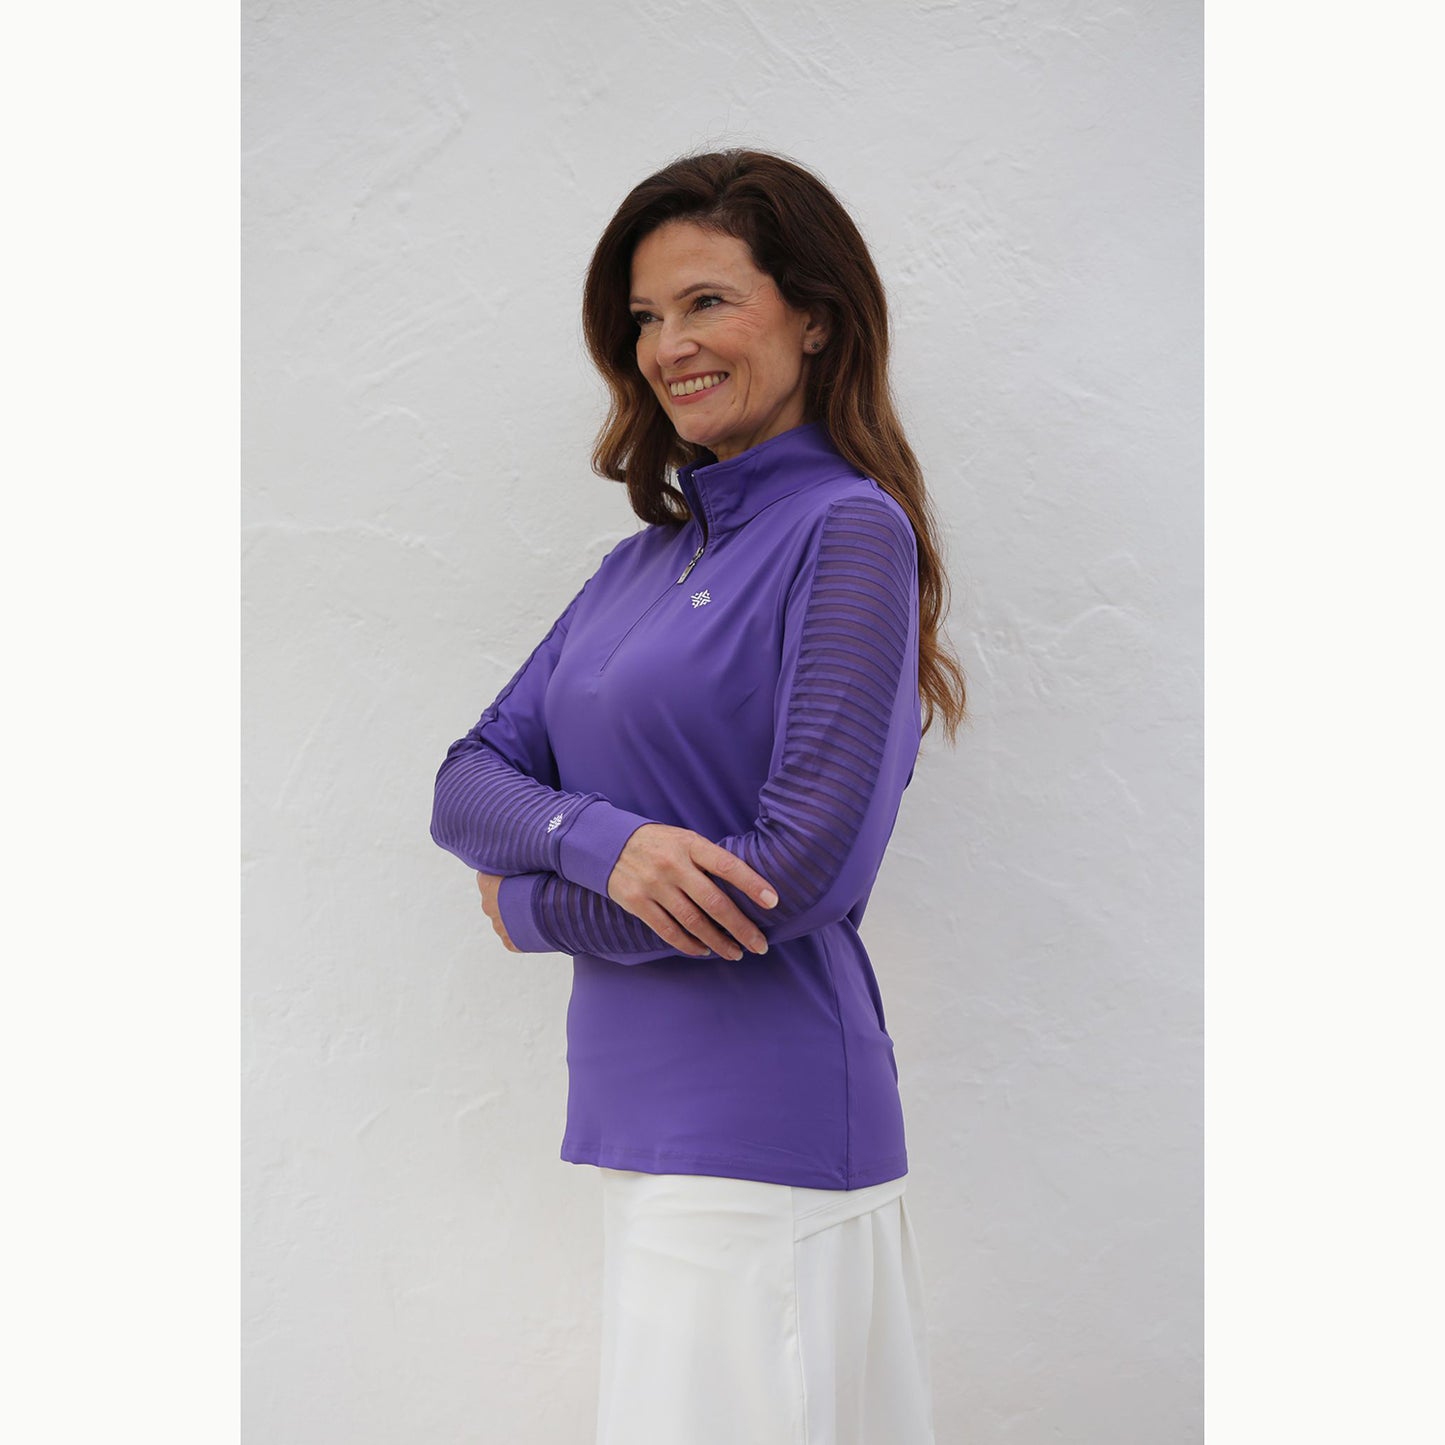 FAMARA Ladies Long Sleeve Lavender Top With Sheer Striped Sleeves